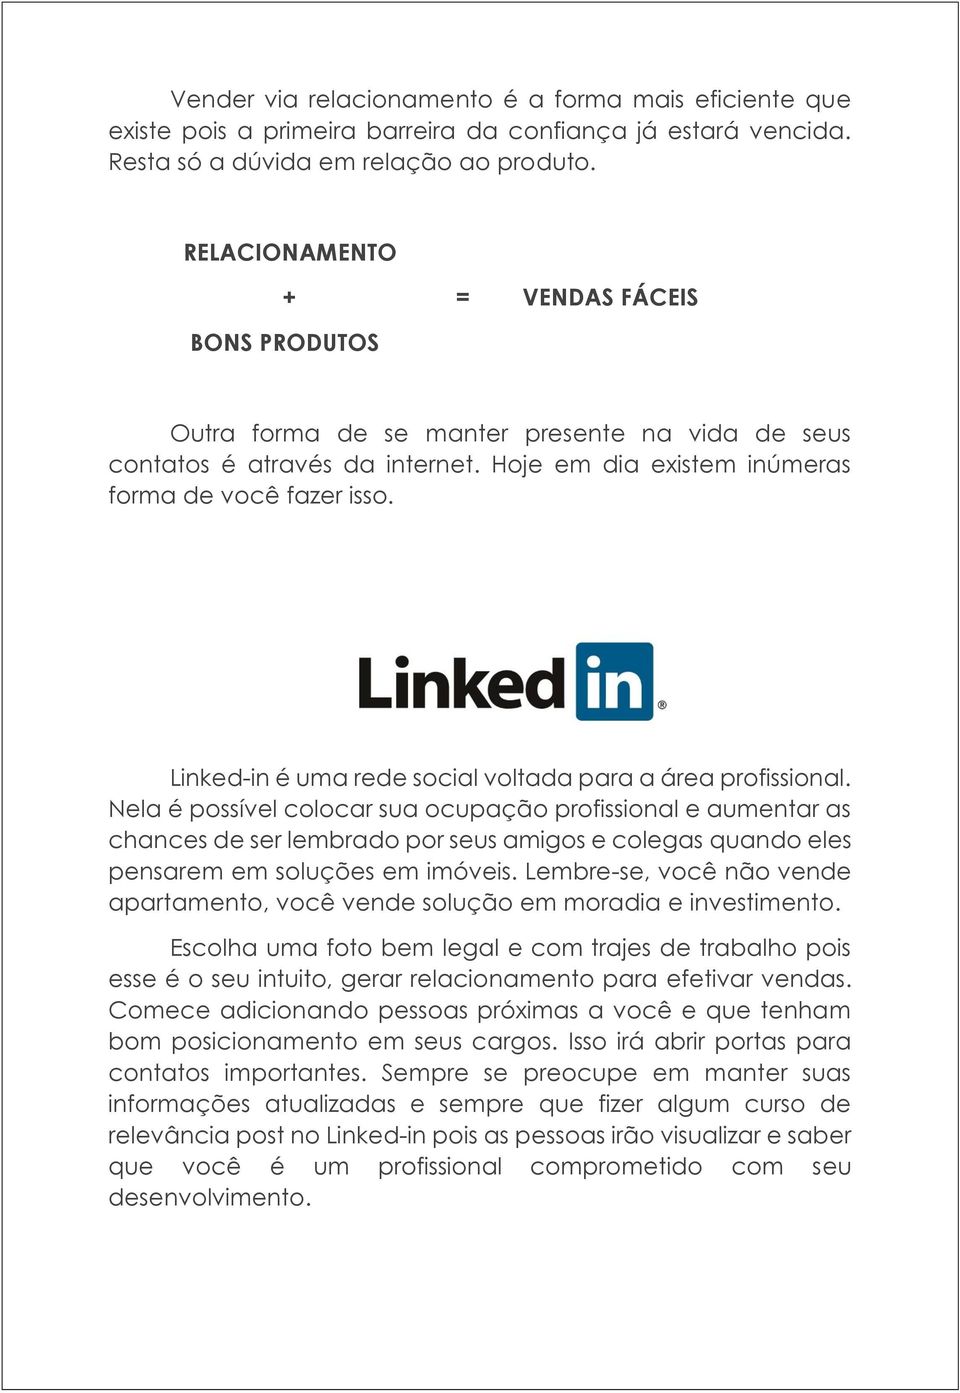 Linked-in é uma rede social voltada para a área profissional.